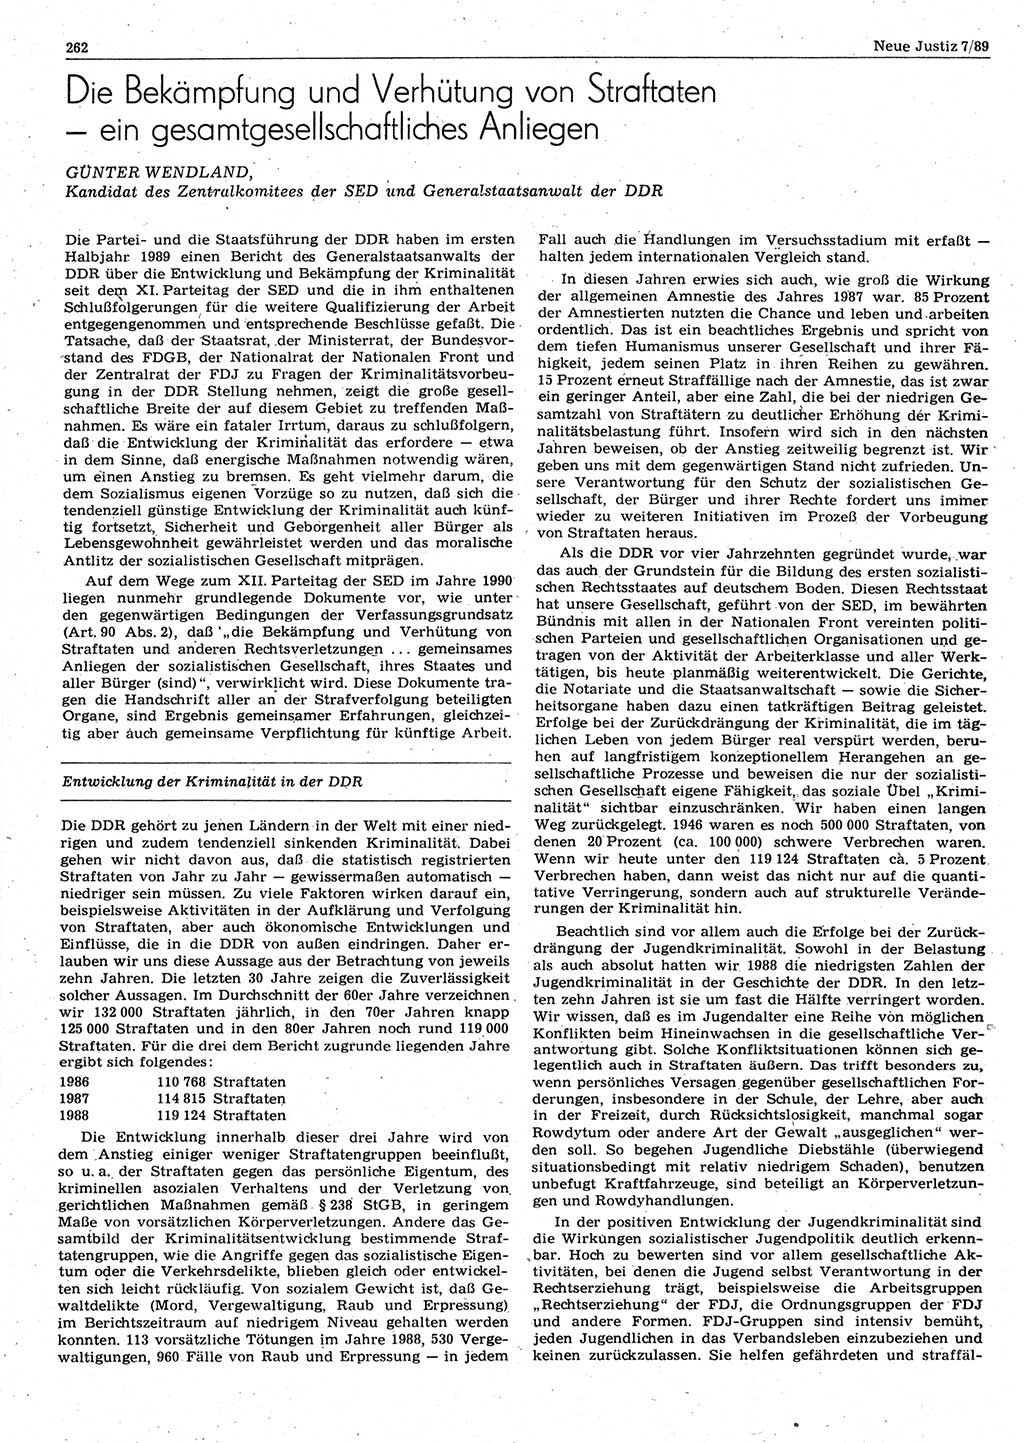 Neue Justiz (NJ), Zeitschrift für sozialistisches Recht und Gesetzlichkeit [Deutsche Demokratische Republik (DDR)], 43. Jahrgang 1989, Seite 262 (NJ DDR 1989, S. 262)